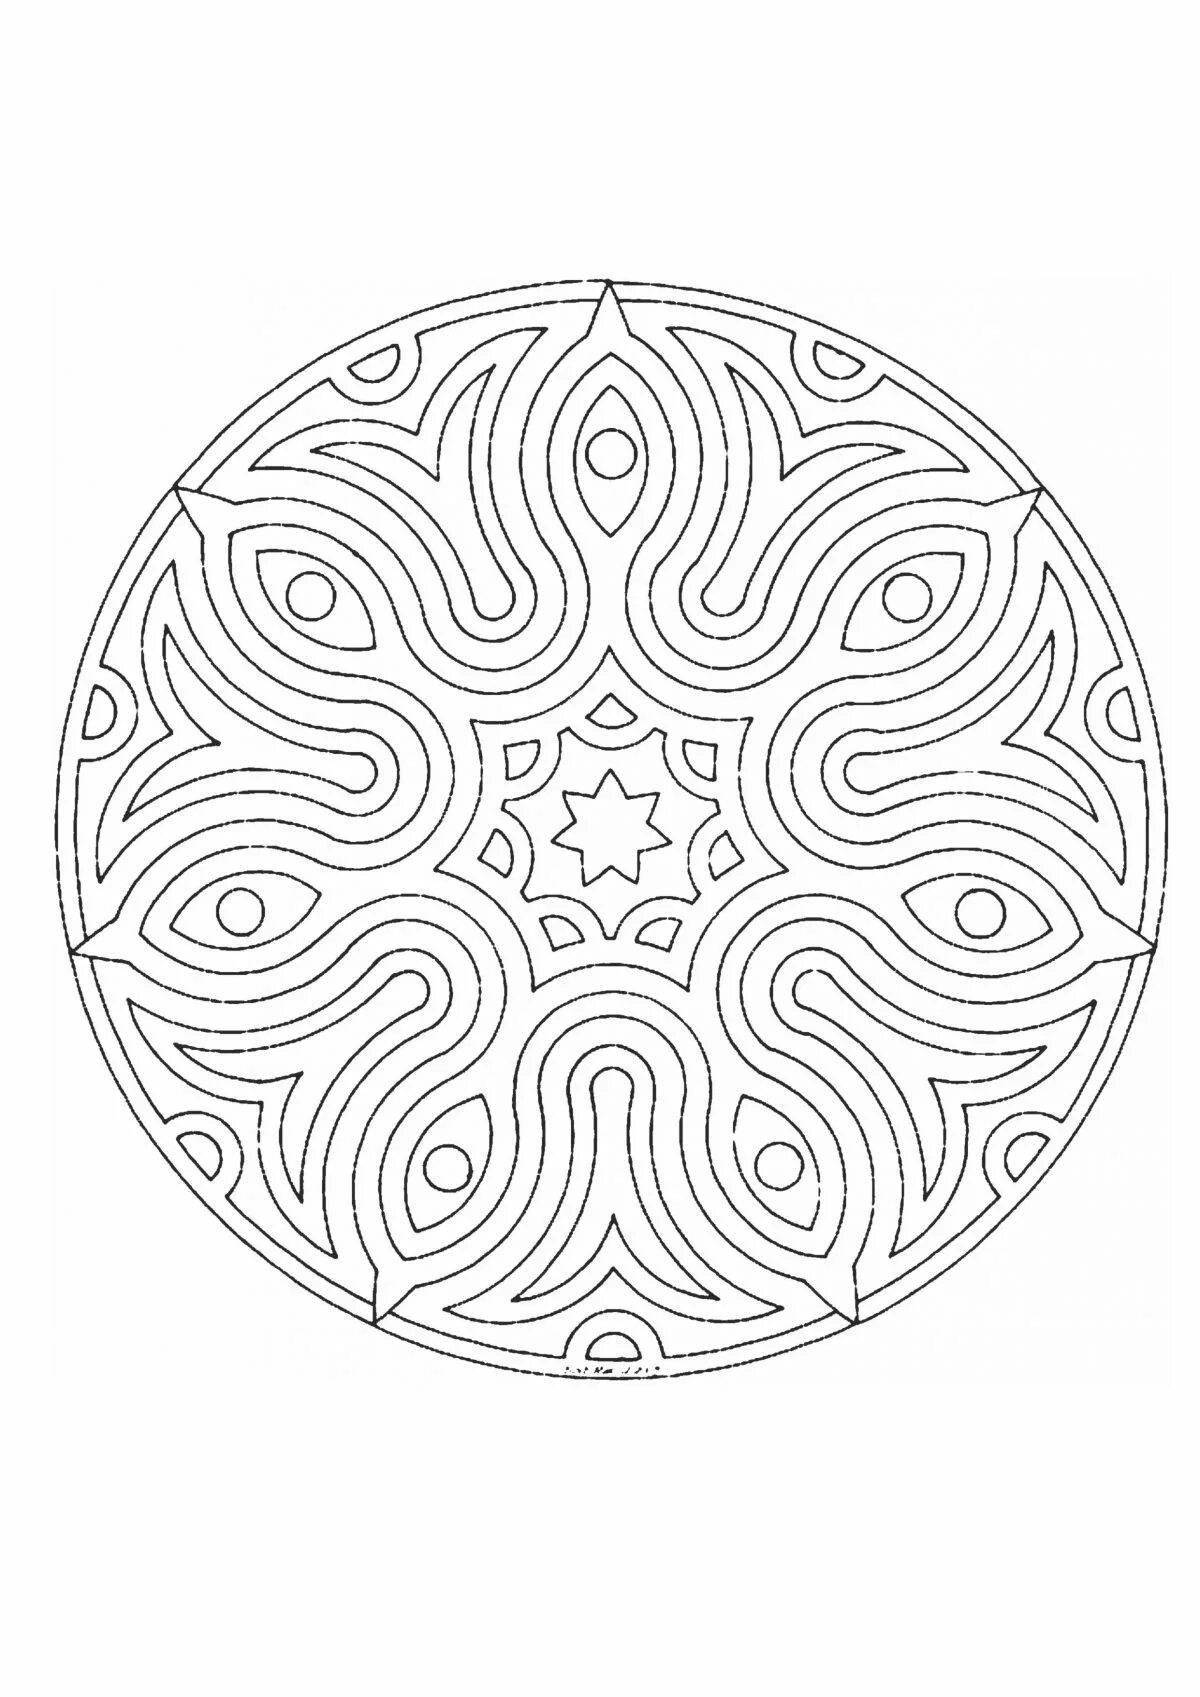 Замысловатый орнамент в круге